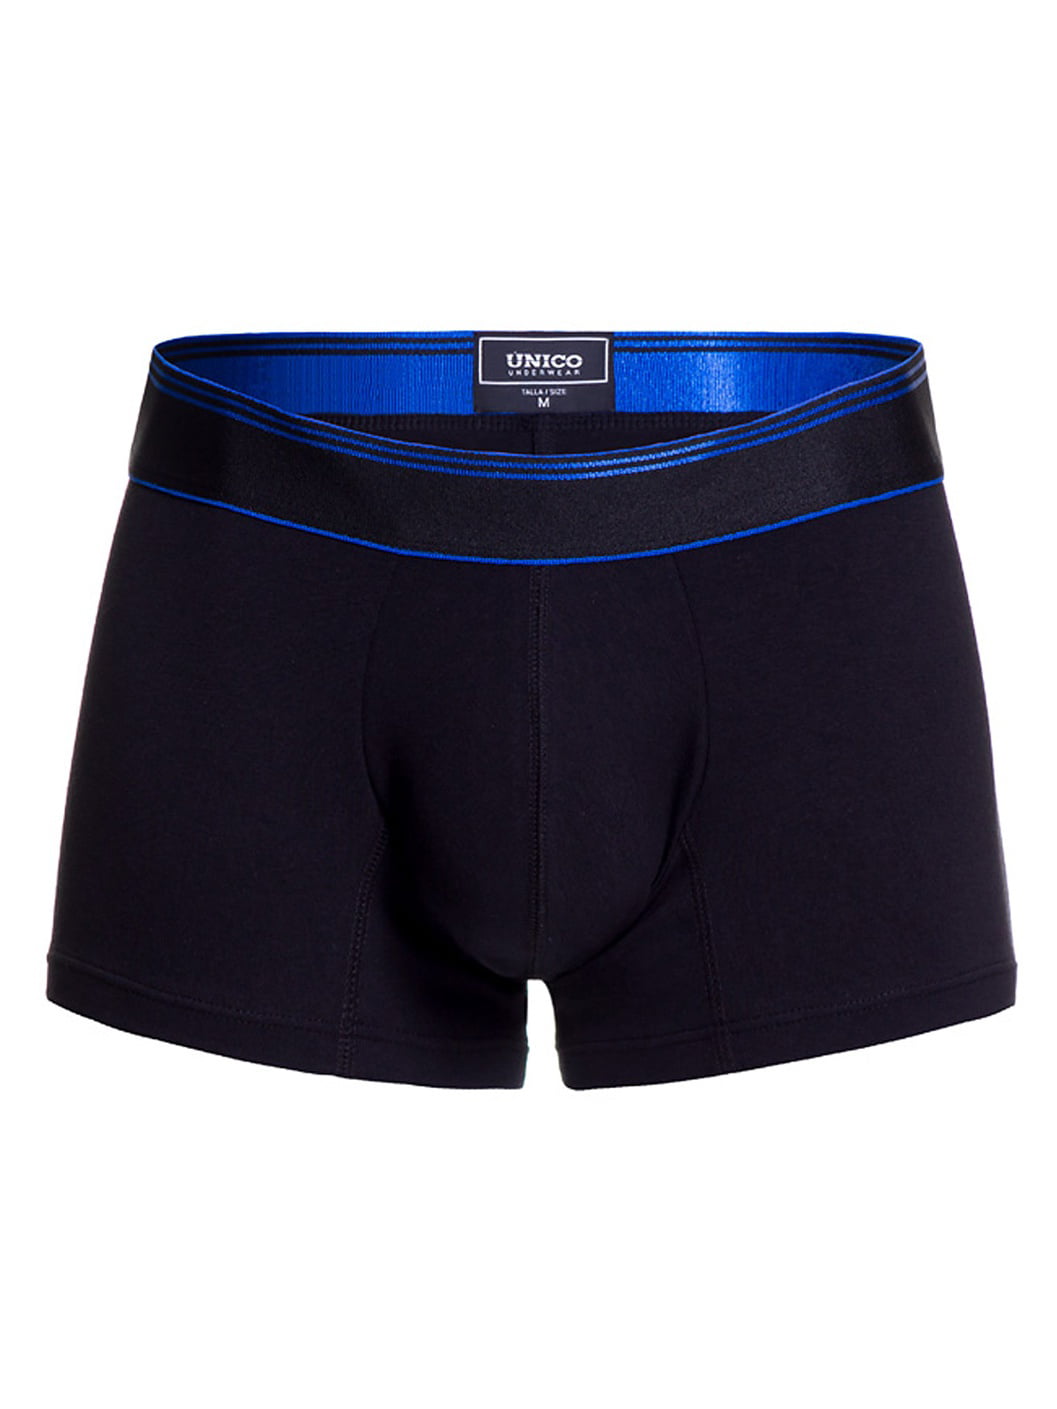 Mundo Unico - Mundo Unico Short Boxer Briefs Cotton Underwear for Men ...